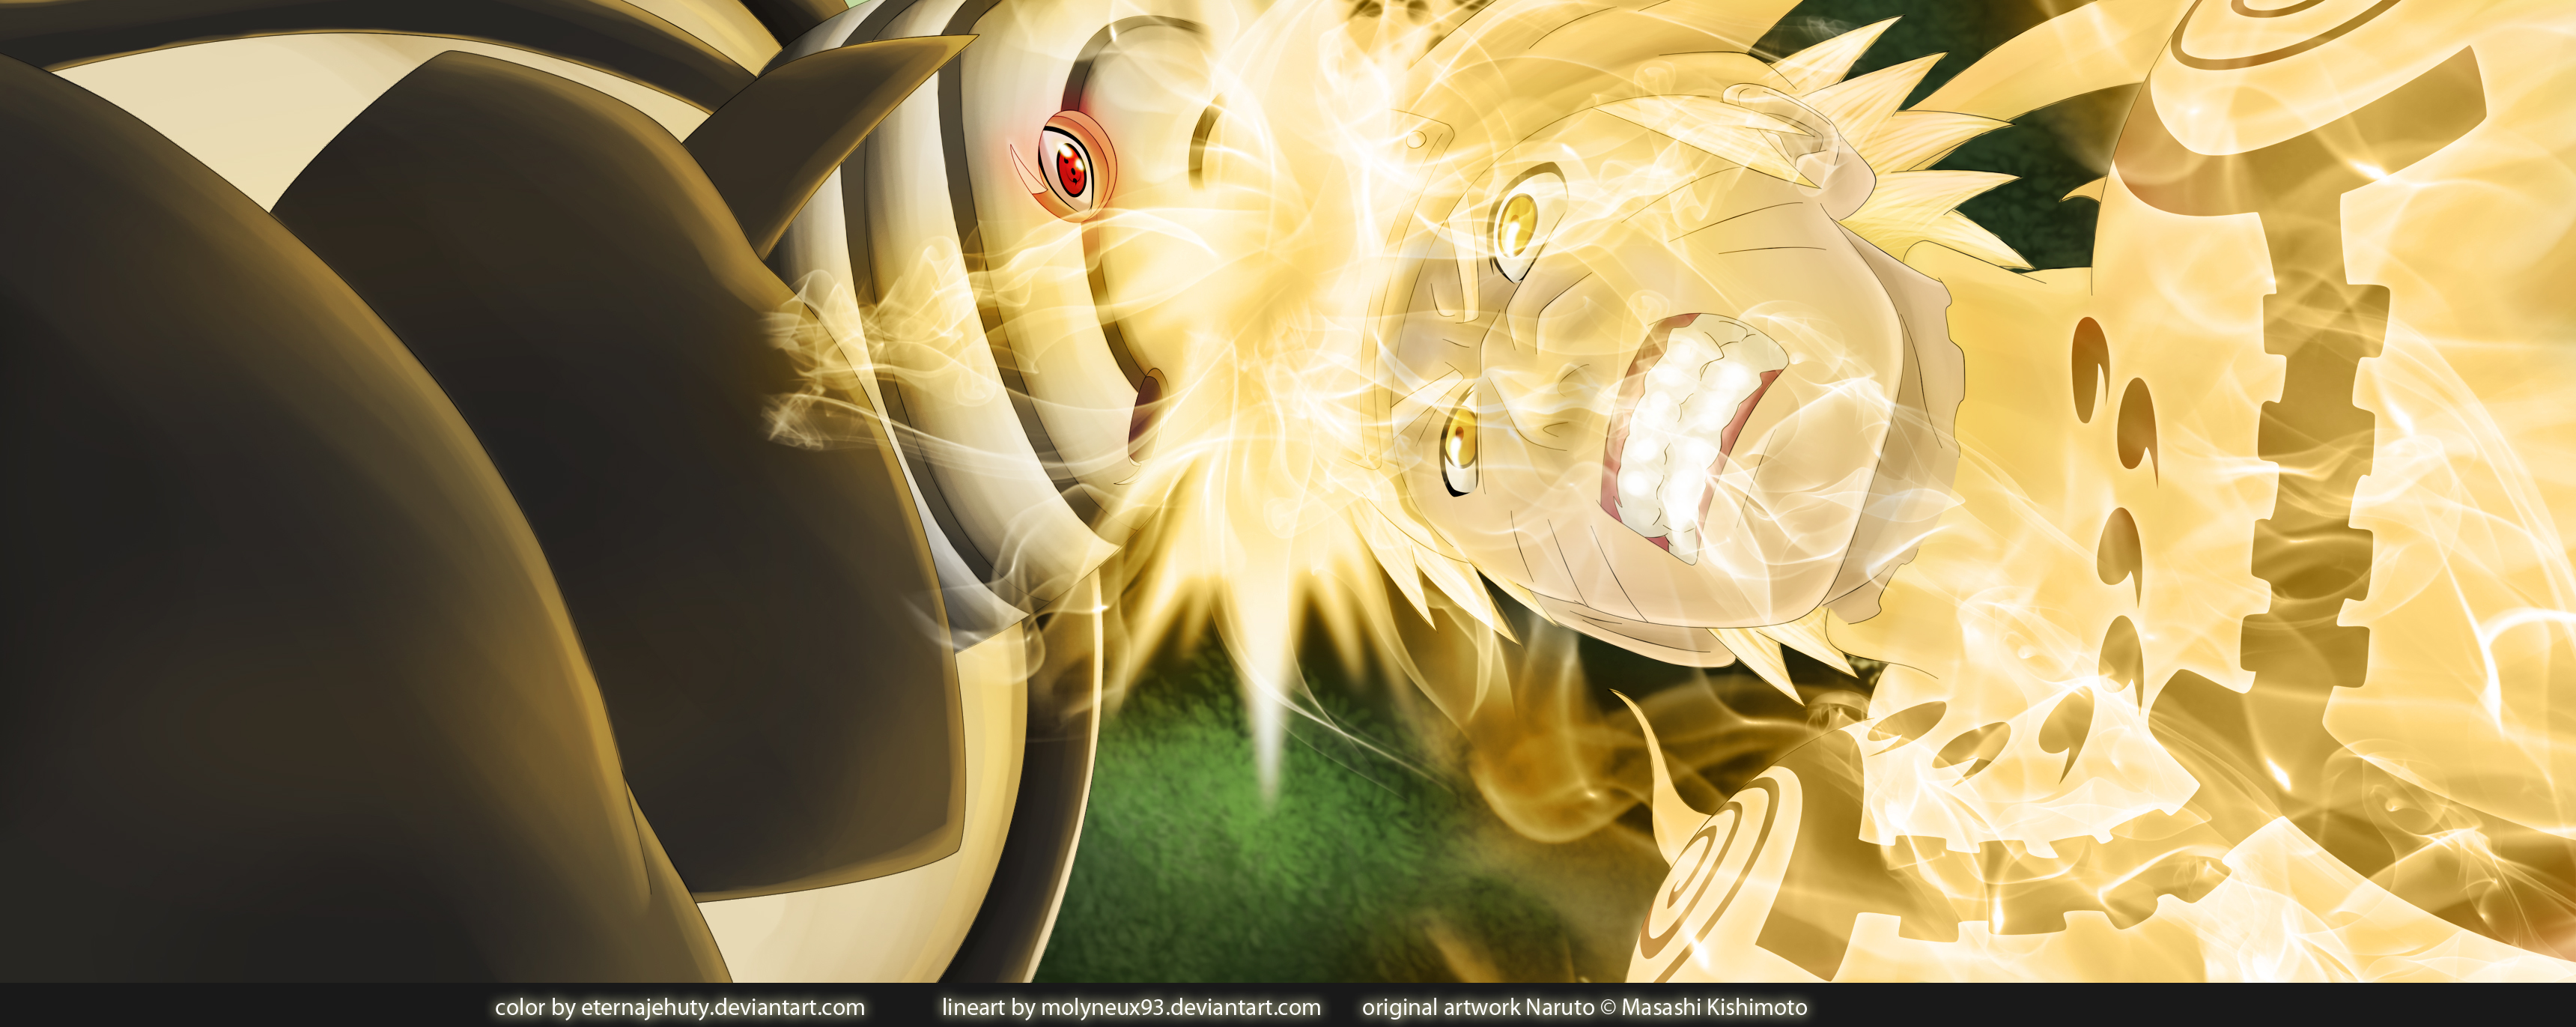 Naruto Vs Madara HD Wallpaper 1080p Res